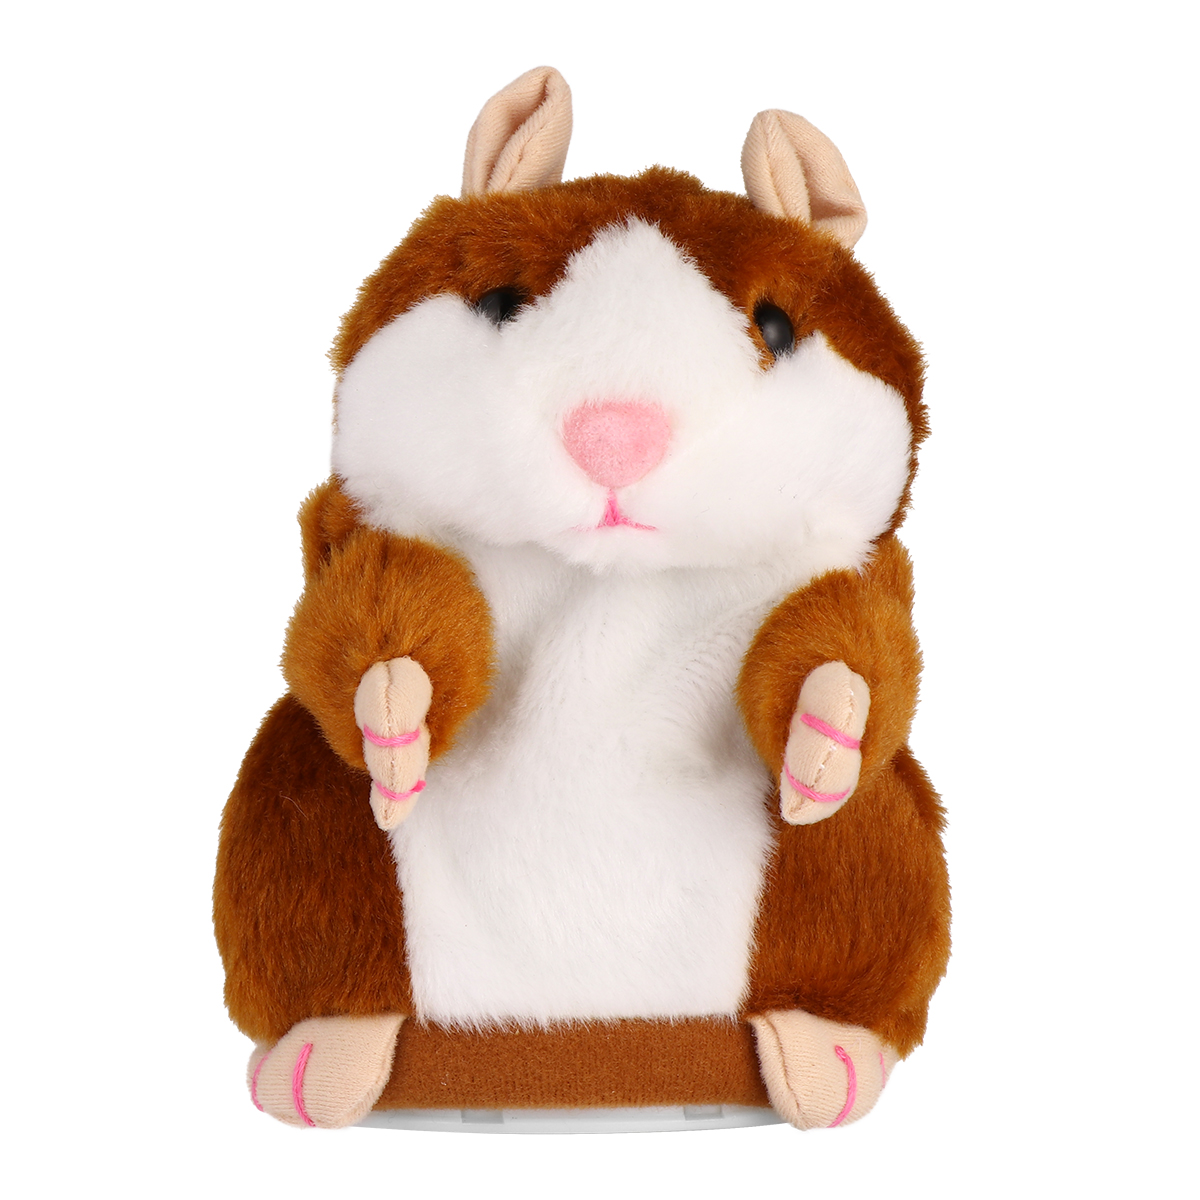 Adorable игрушка. Говорящий хомяк. 2 Gigant Toy Plush Hamster Berlin. Купить говорящего хомяка